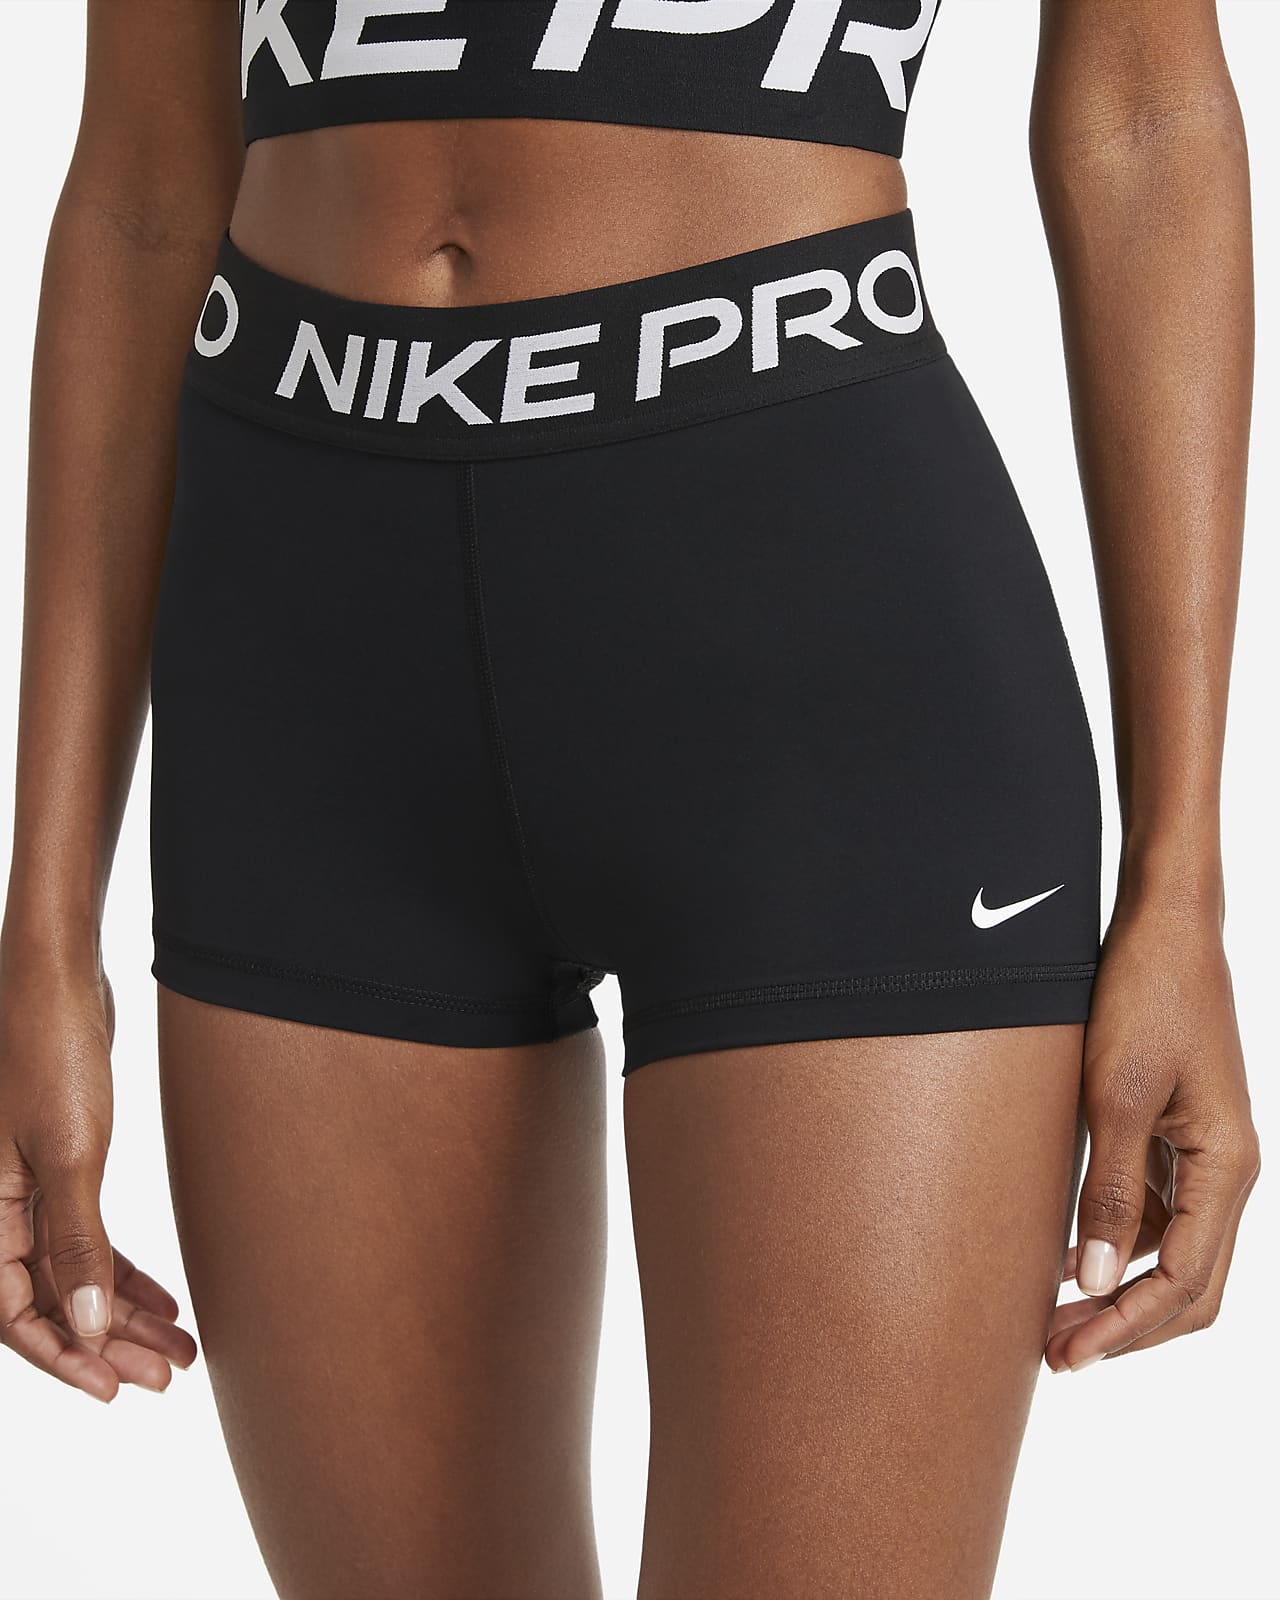 nike pro women's 3 shorts black